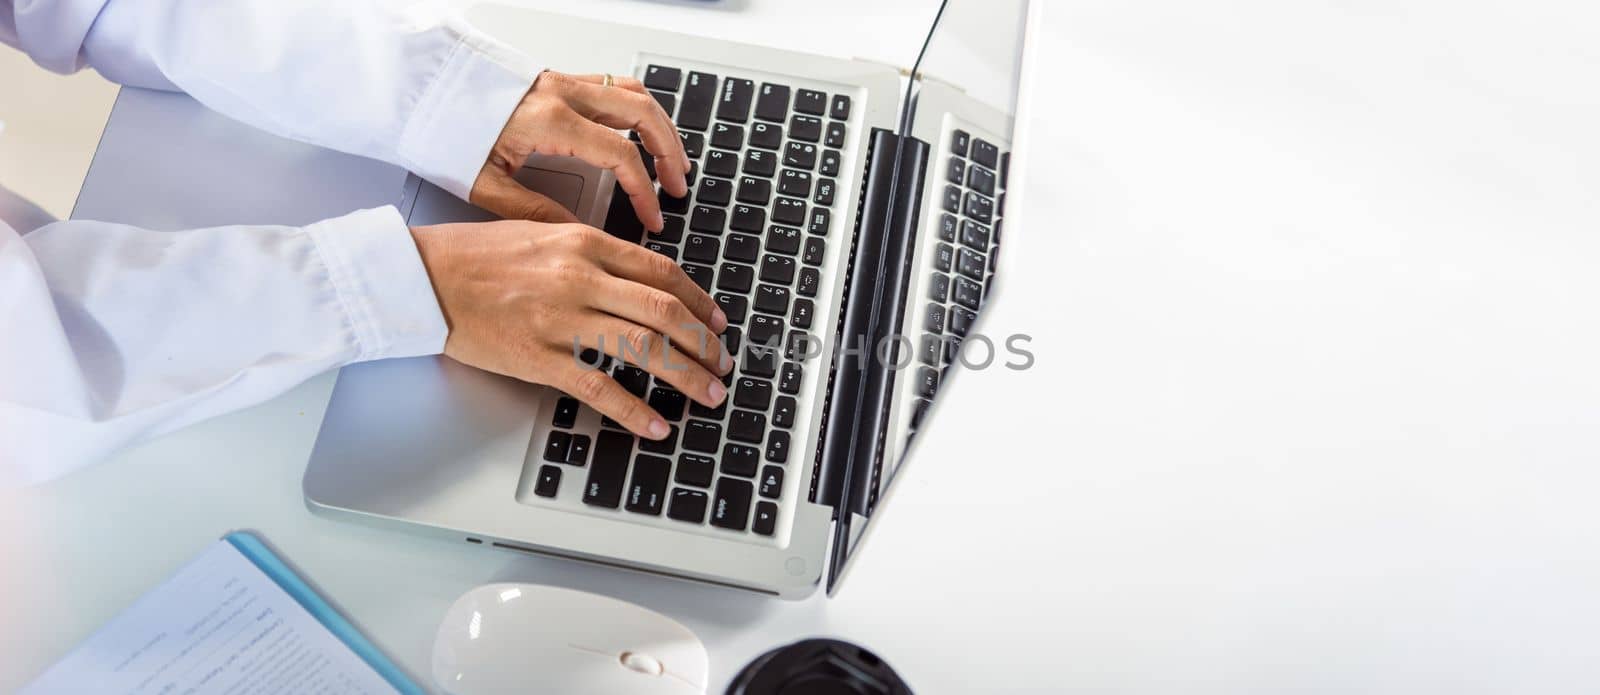 Hands of female doctor wear uniform in hospital she typing information on keyboard laptop by Sorapop